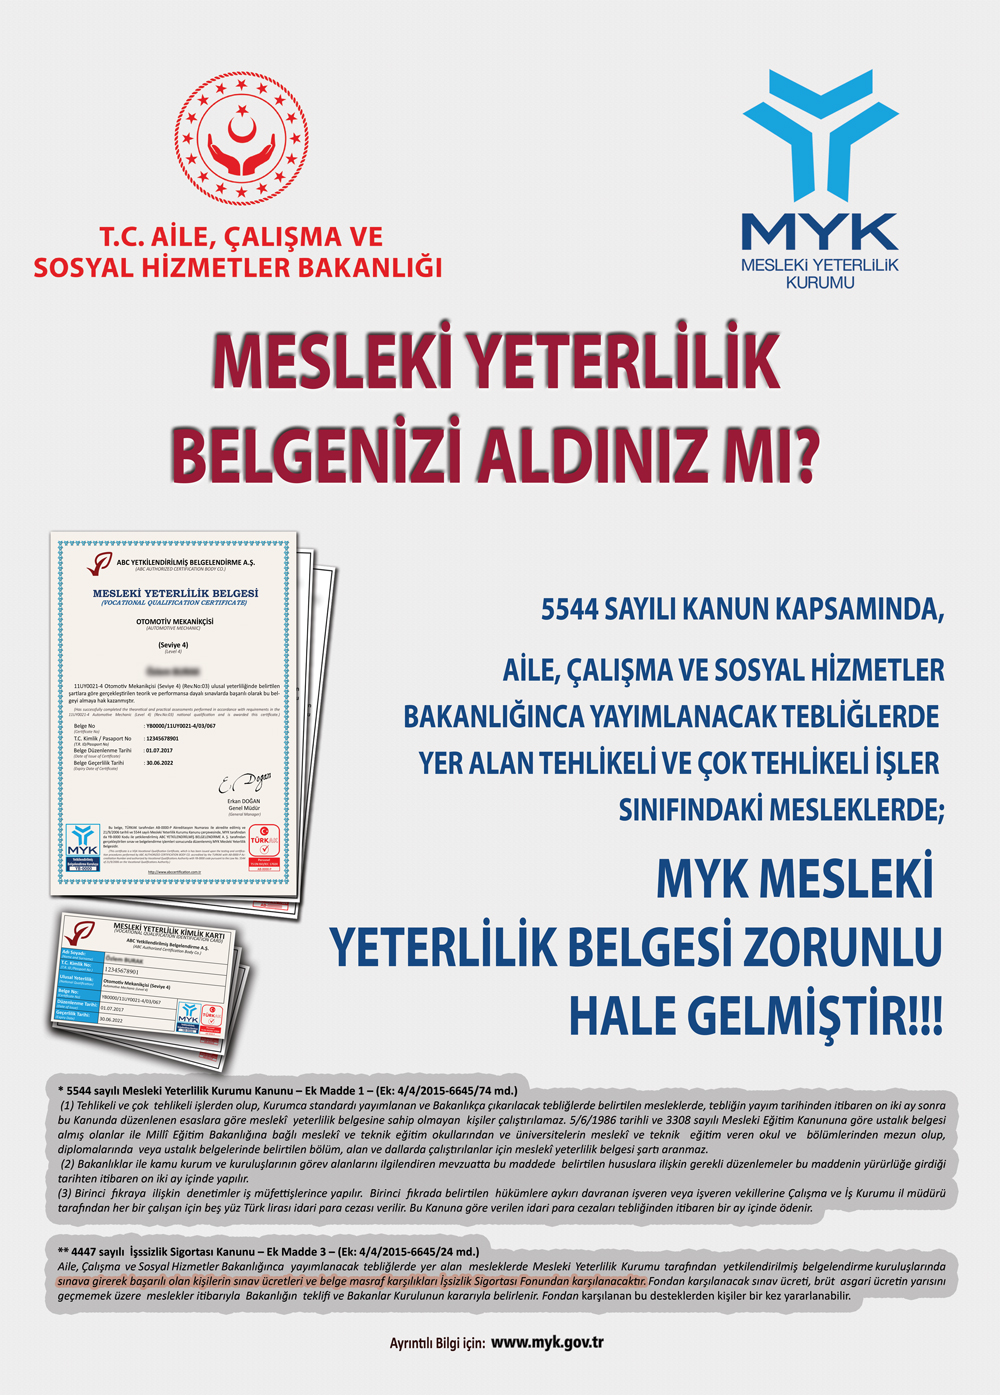 Myk Ankara Mesleki Yeterlilik Belgesi 05422927619